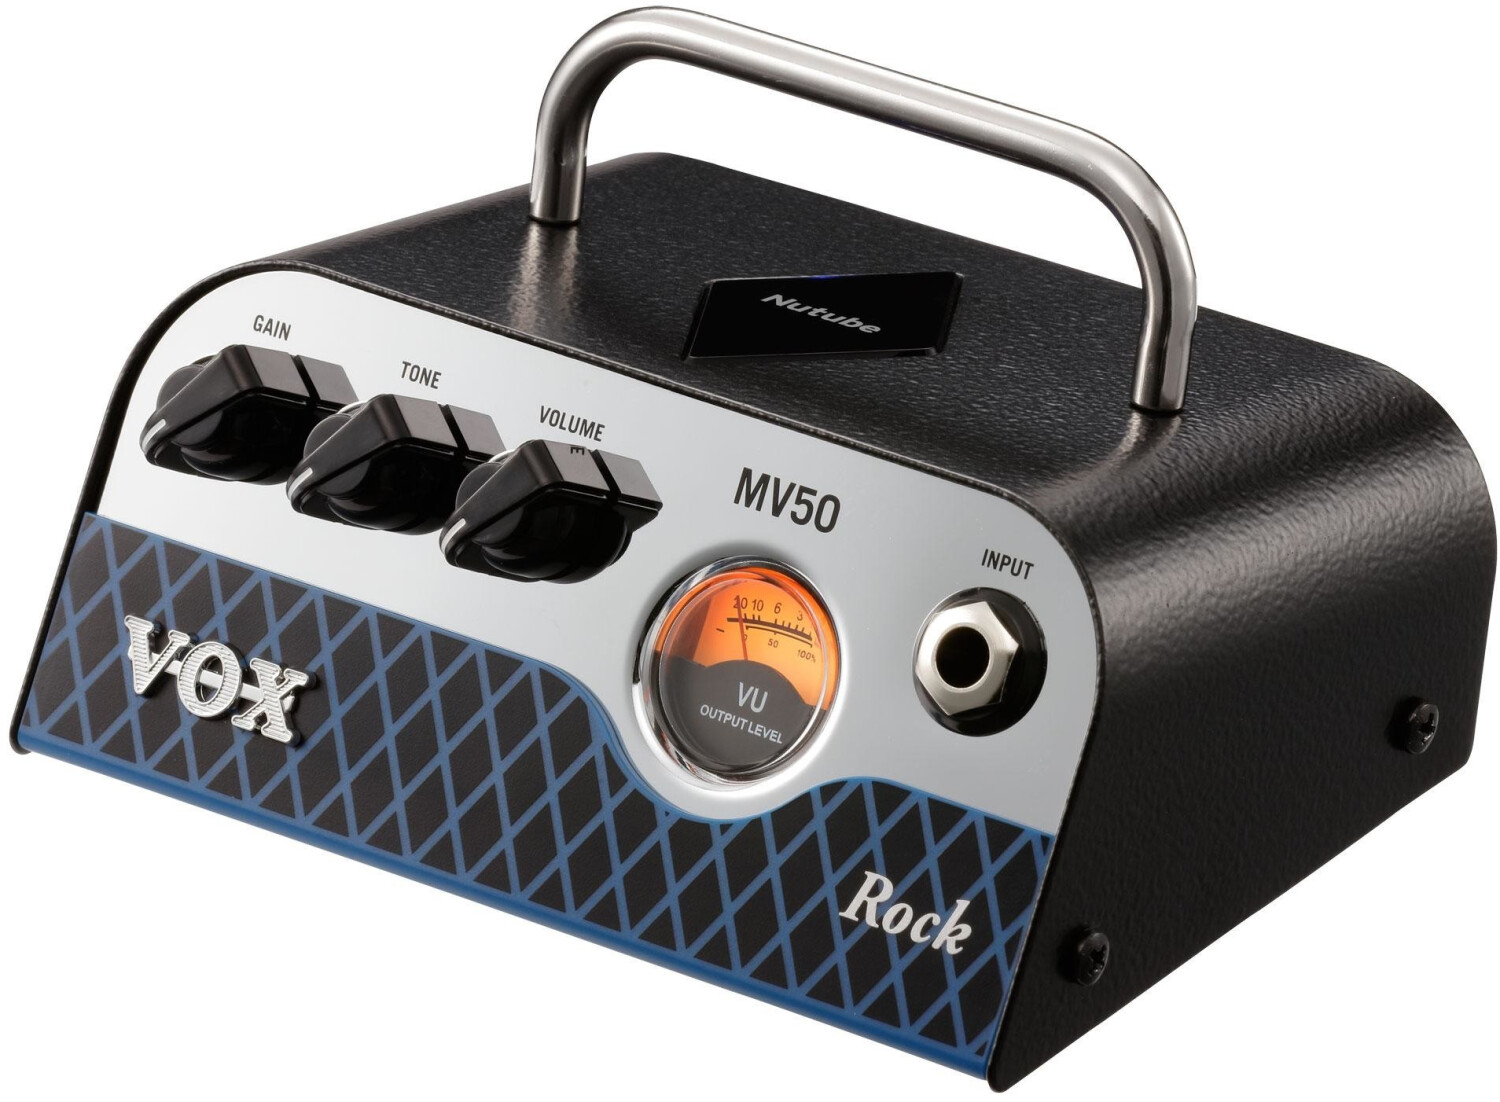 Vox MV50 Rock a € 131,66 (oggi) | Migliori prezzi e offerte su idealo